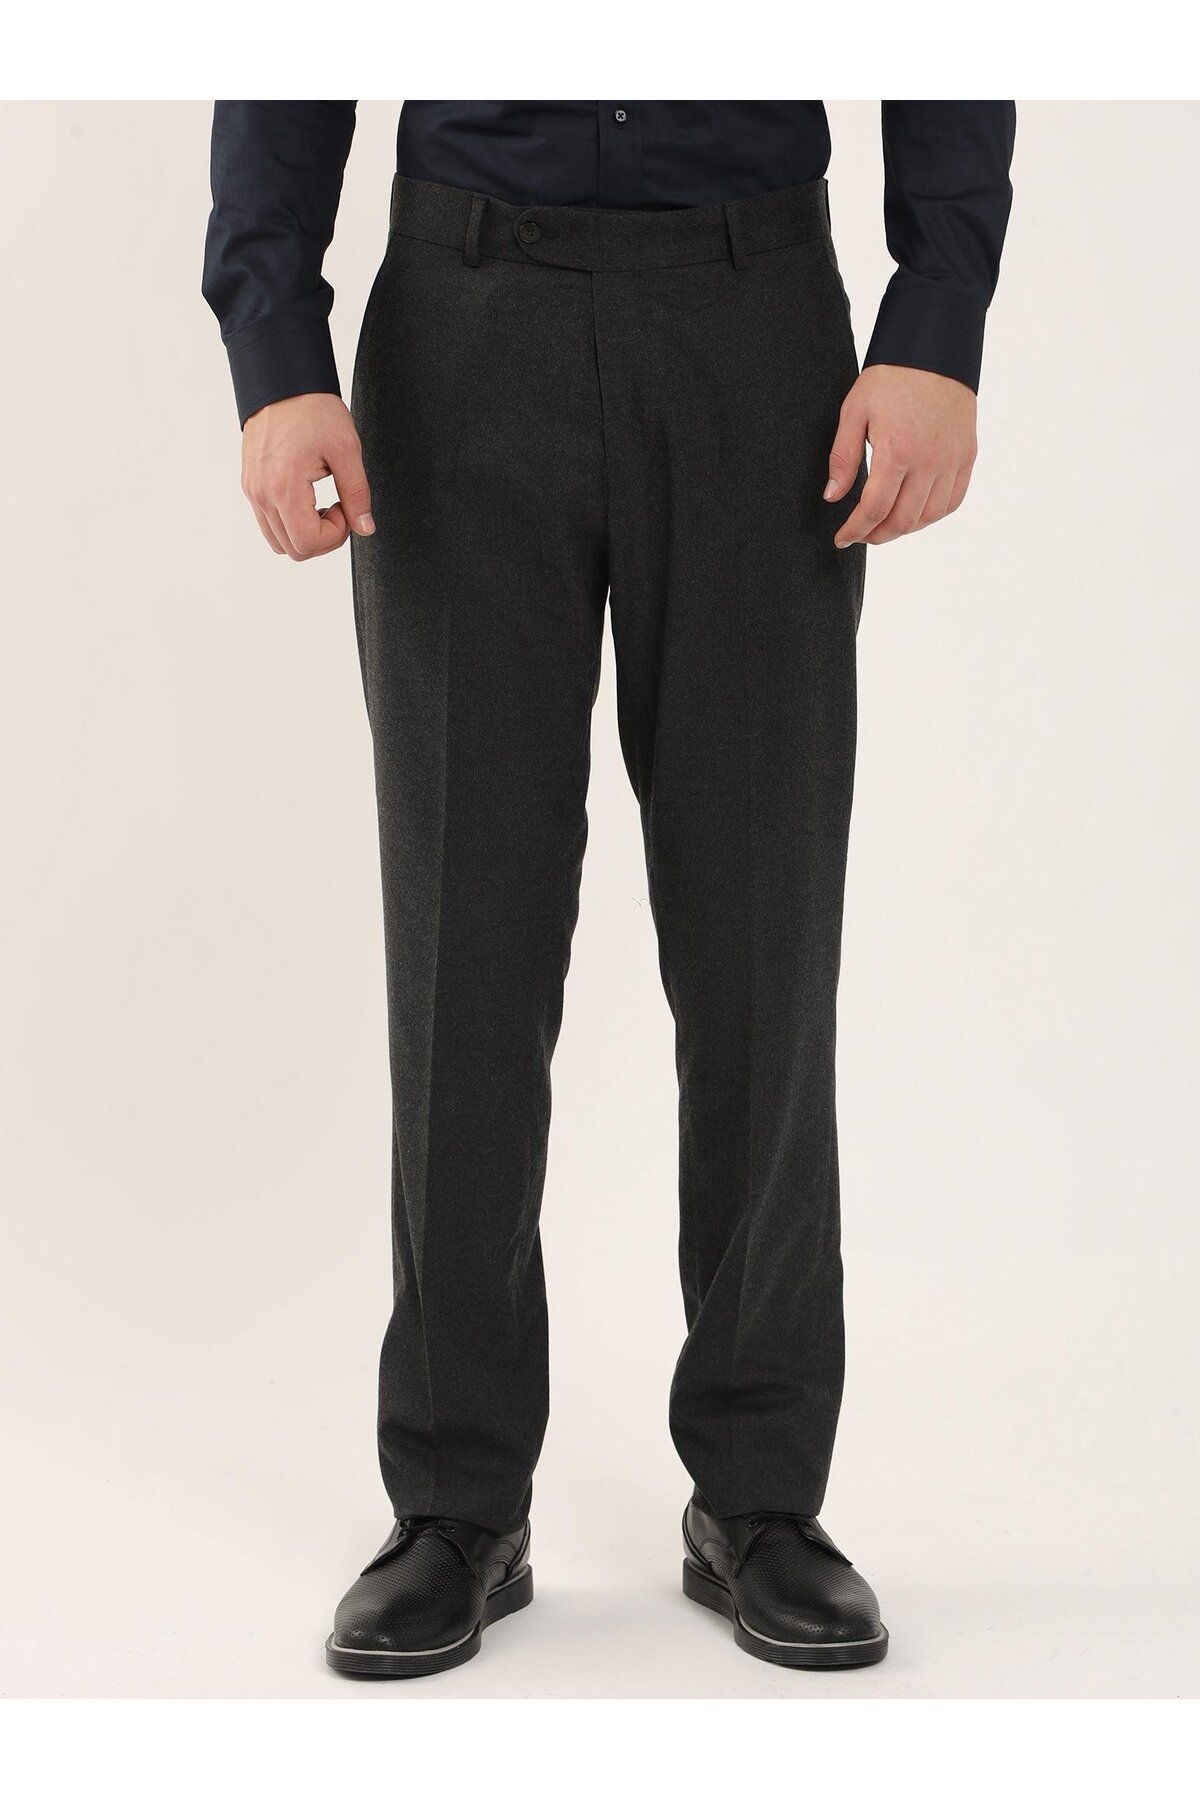 Dufy Koyu Gri Erkek Slim Fit Düz Klasik Pantolon - 94143